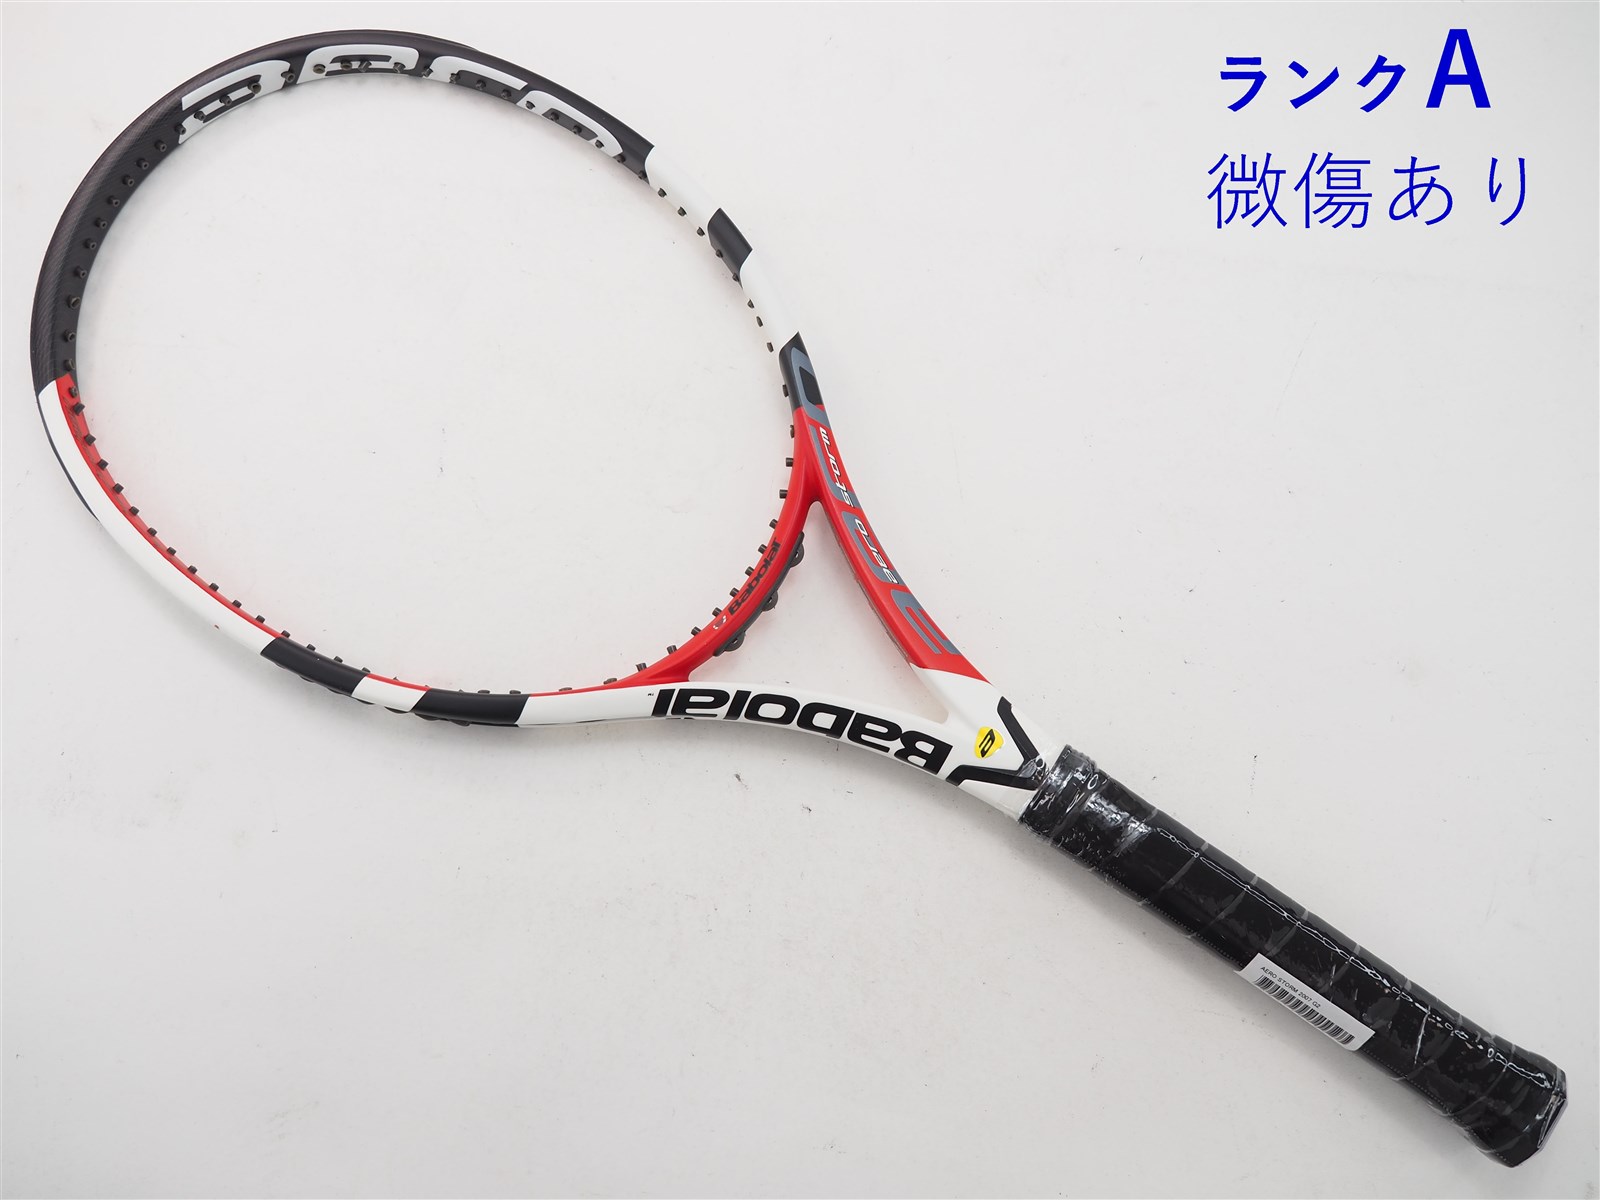 テニスラケット バボラ アエロストーム 2007年モデル【一部グロメット割れ有り】 (G2)BABOLAT AERO STORM 2007